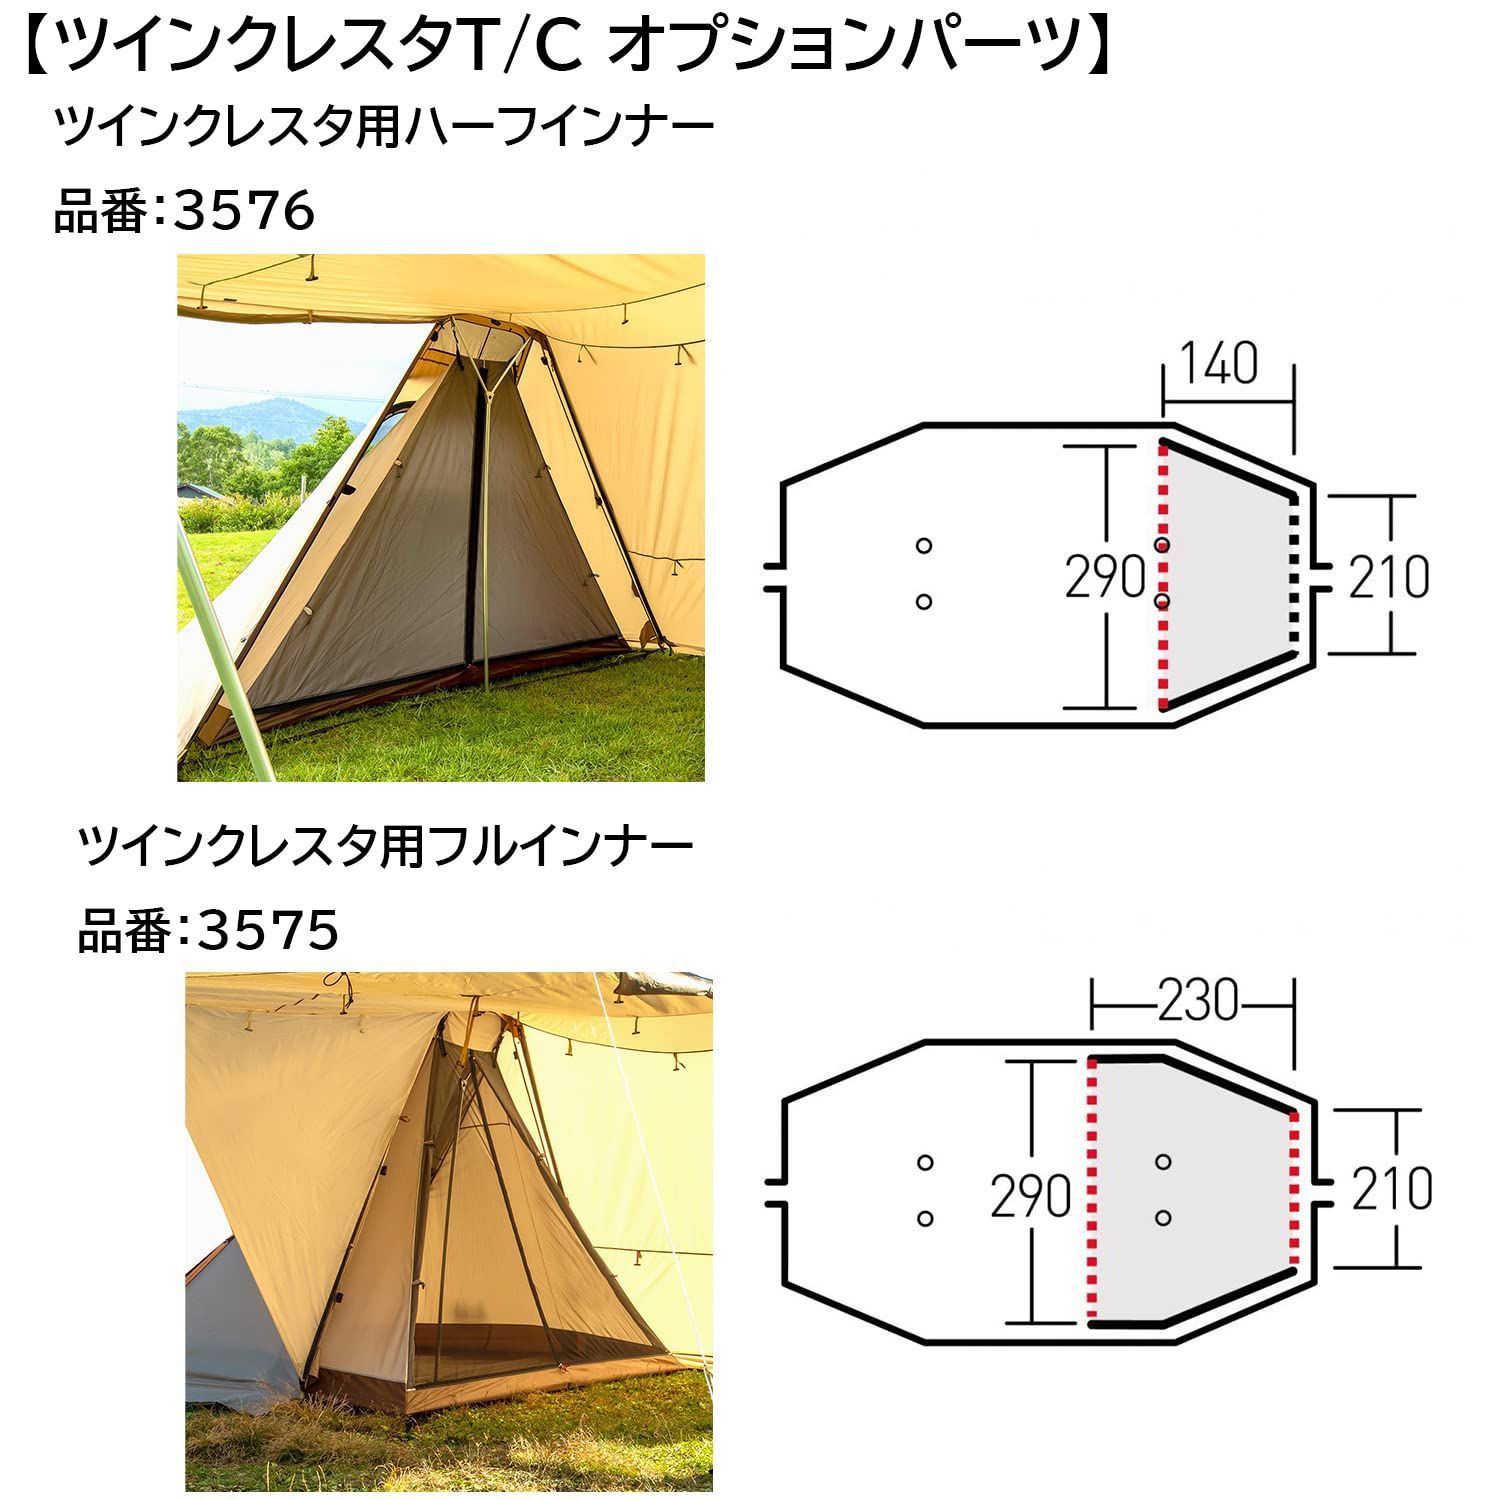 クーポンGET ogawa(オガワ) アウトドア キャンプ テント用 フル